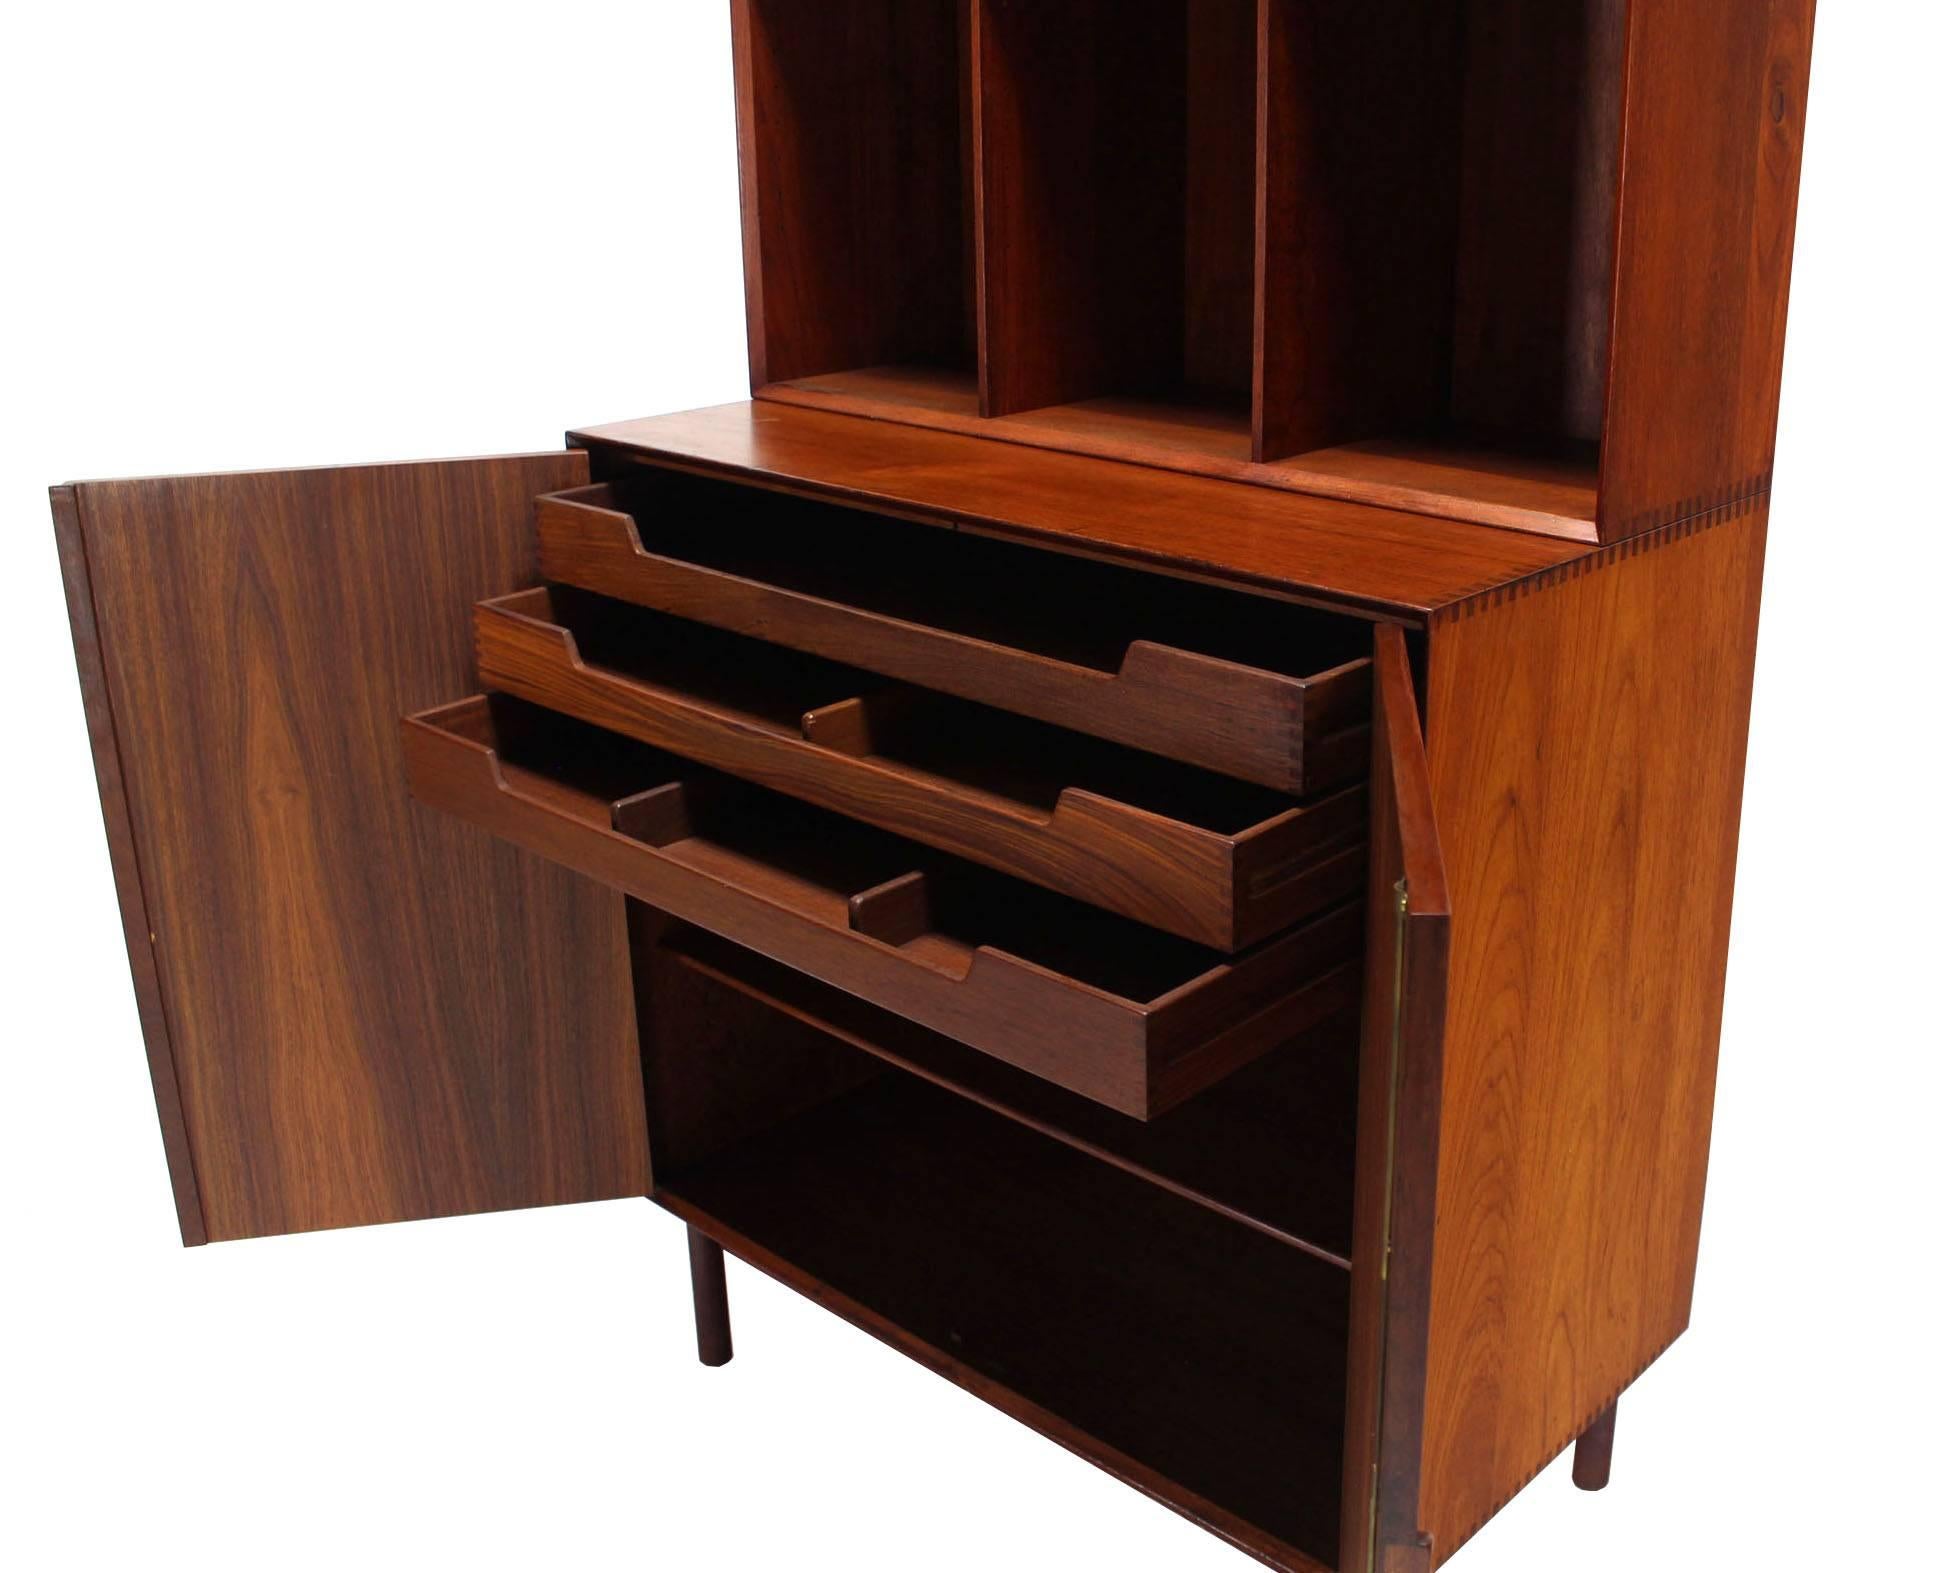 Magnificent solid teak design cabinet by Peter Hvidt.